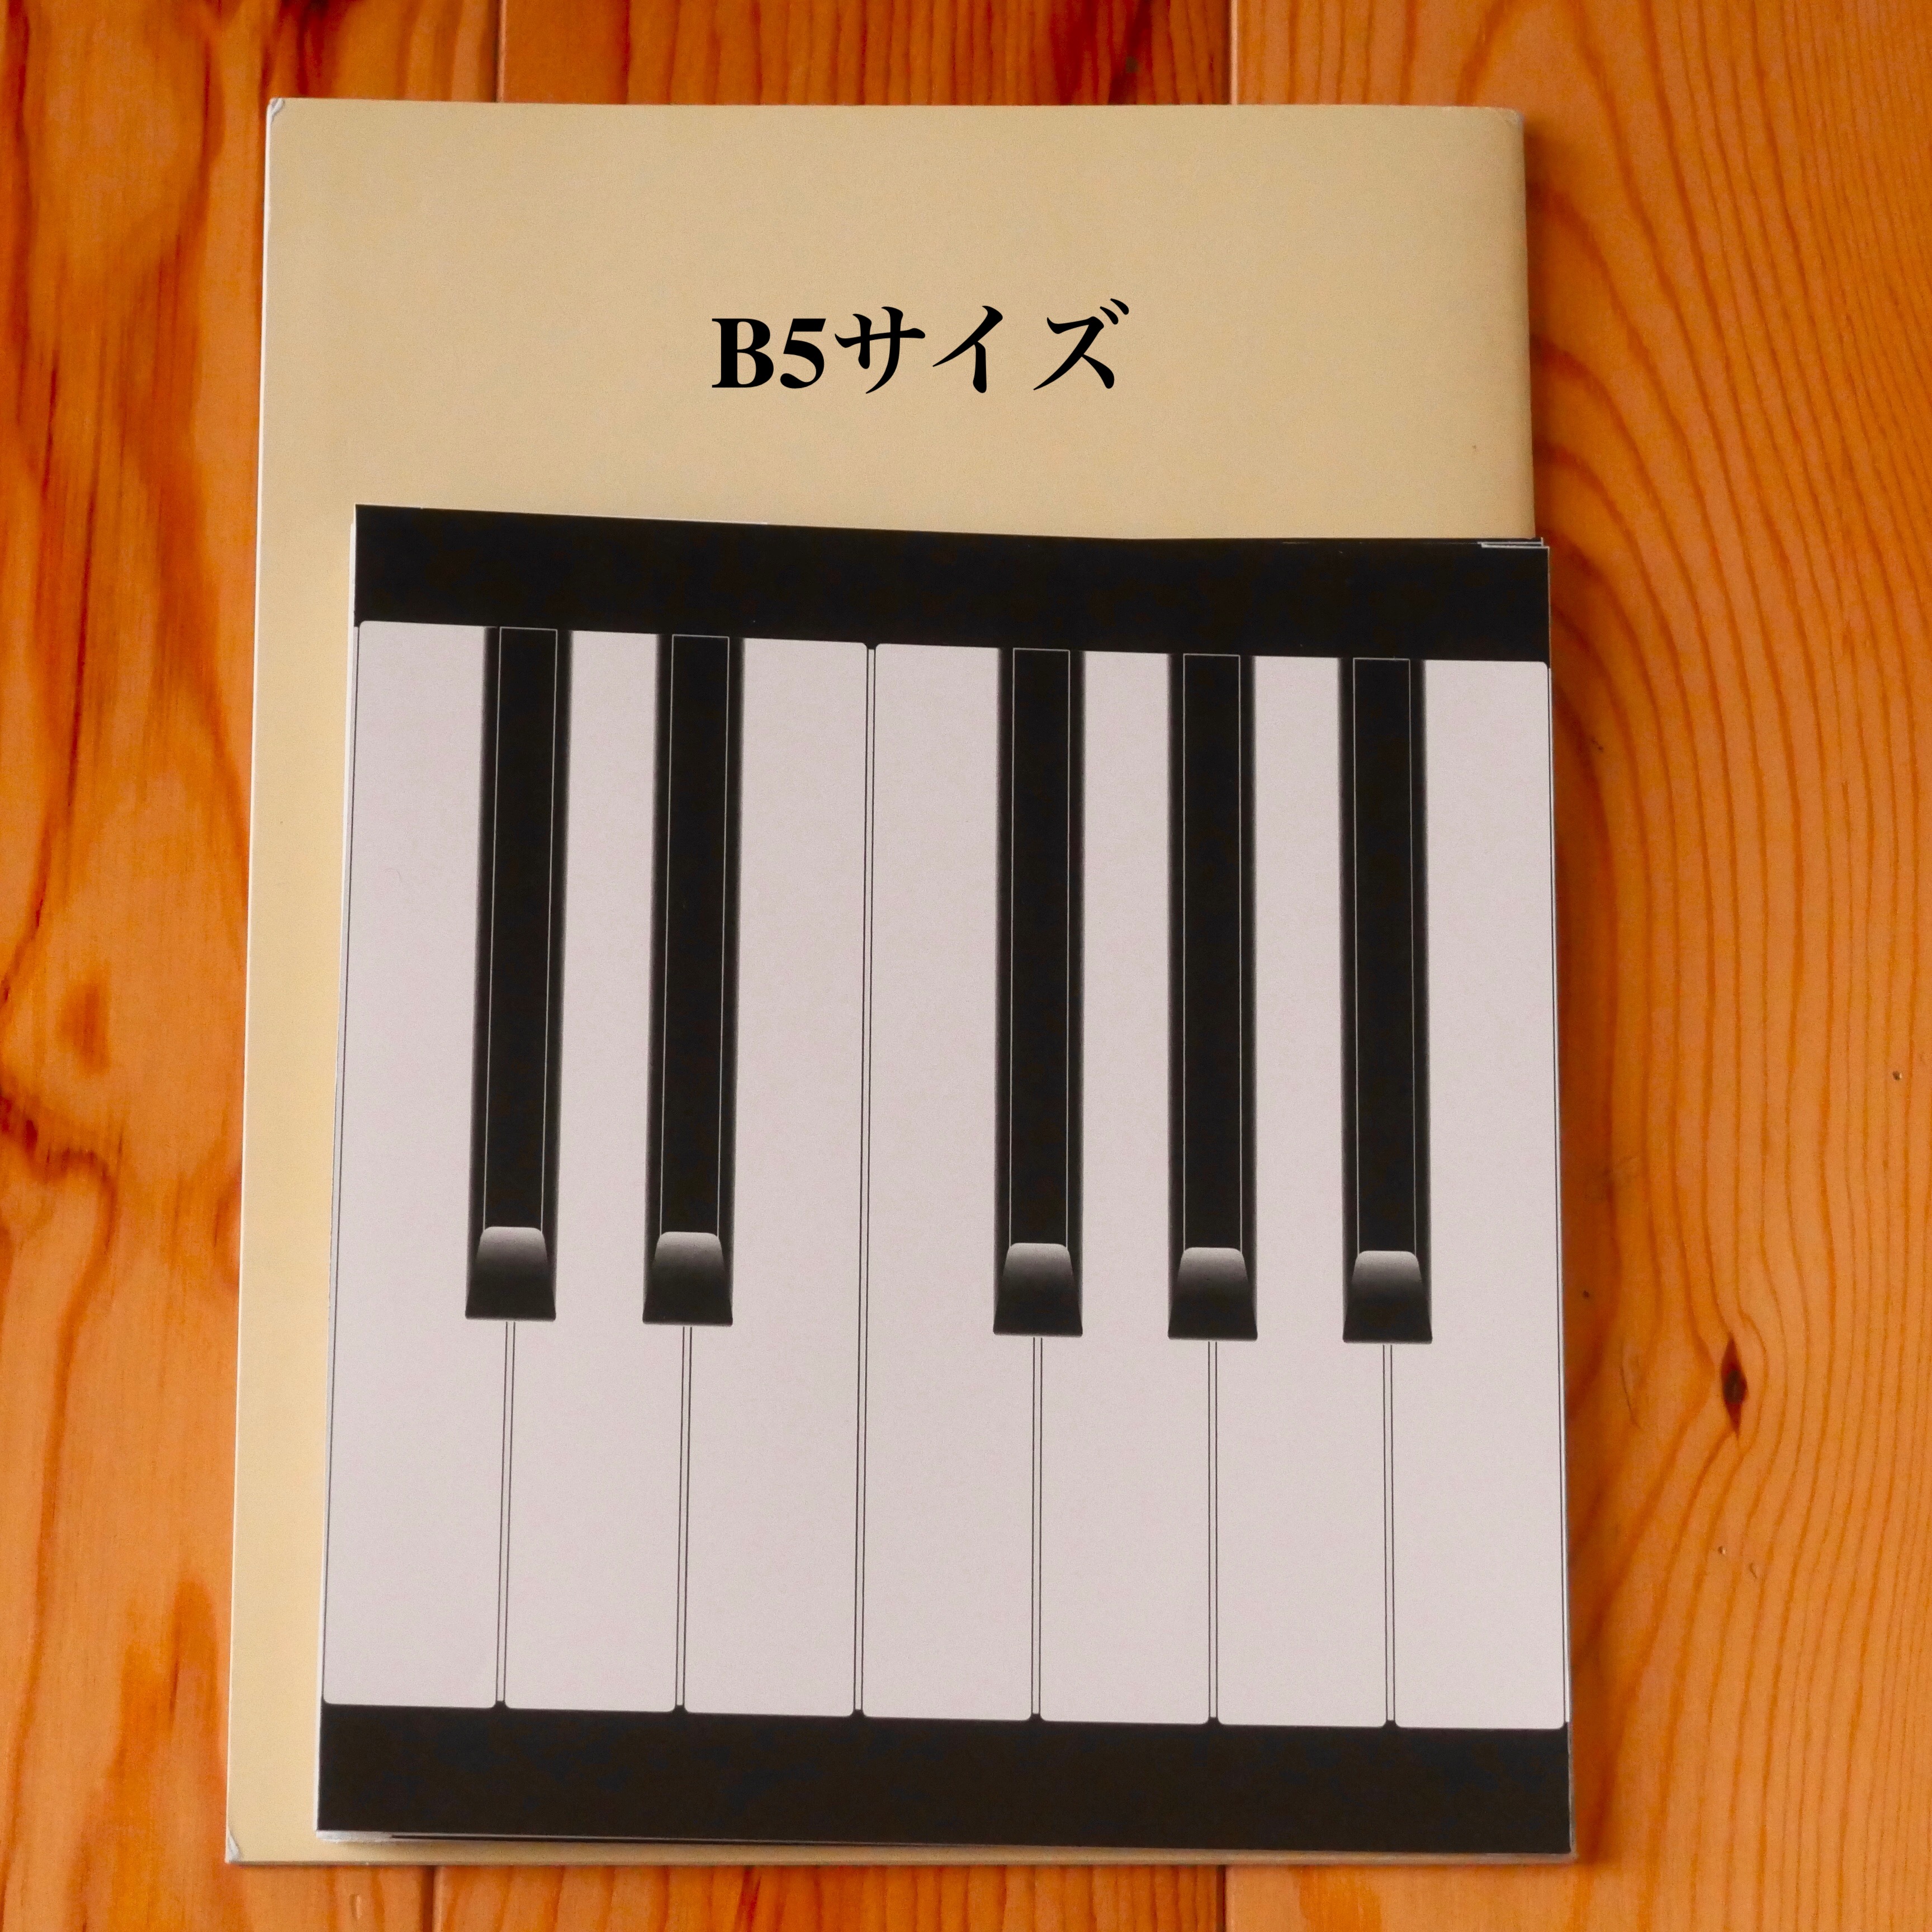 4日後発送 紙鍵盤 ピアノ 教材 実物大 鍵盤 紙鍵盤 Iichi ハンドメイド クラフト作品 手仕事品の通販